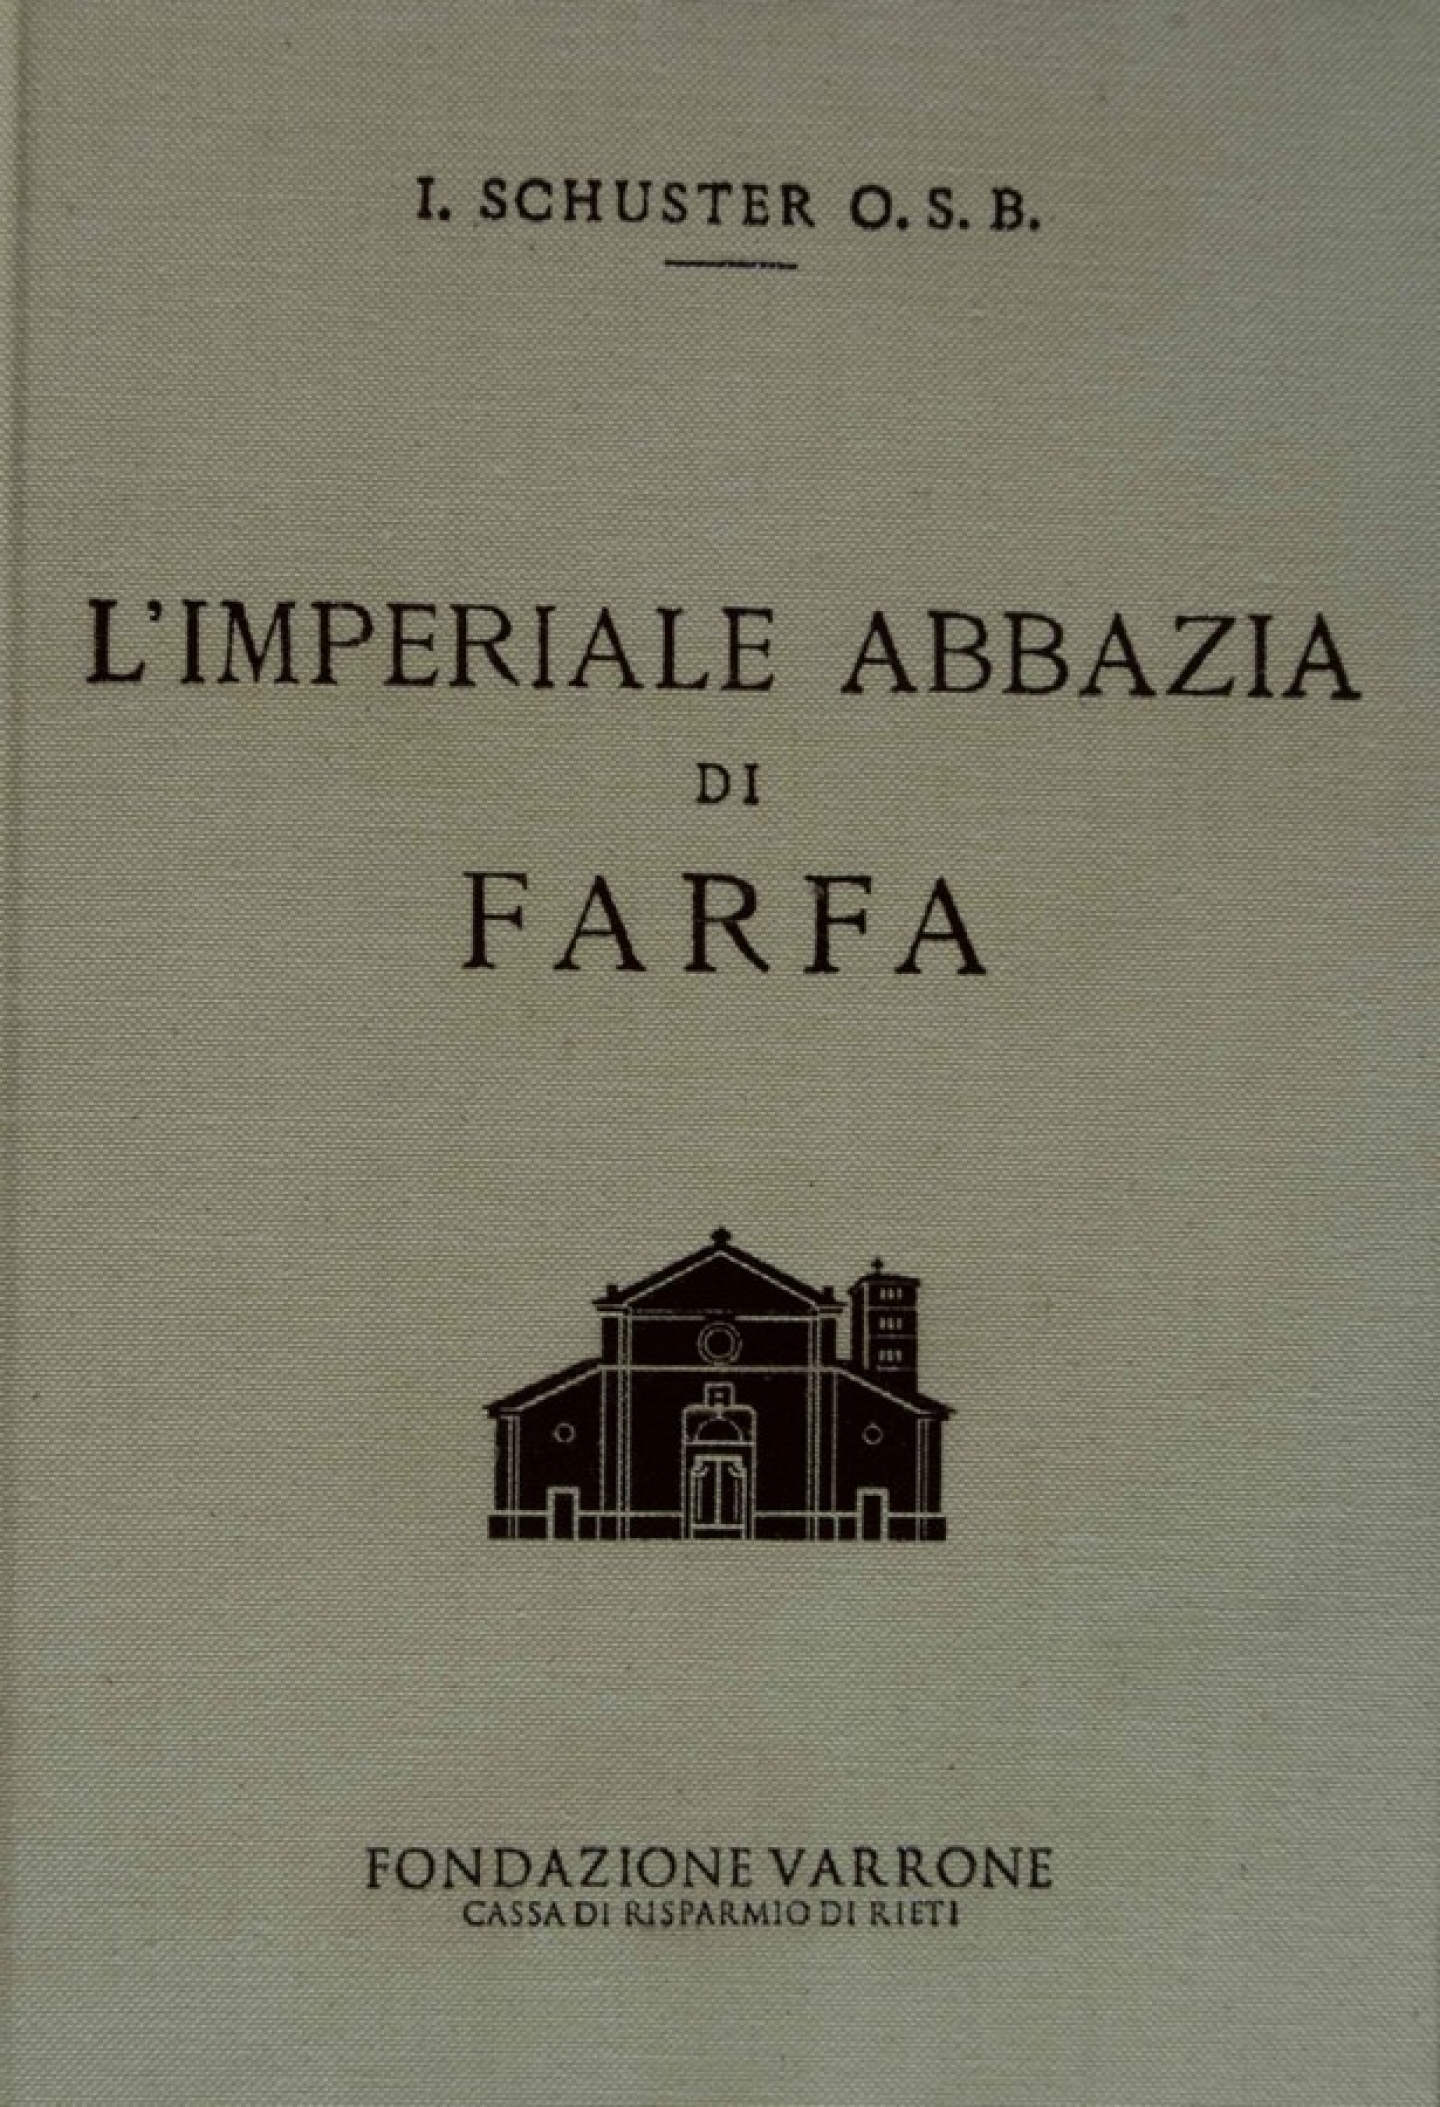 Presentazione del libro "L’Imperiale Abbazia di Farfa"